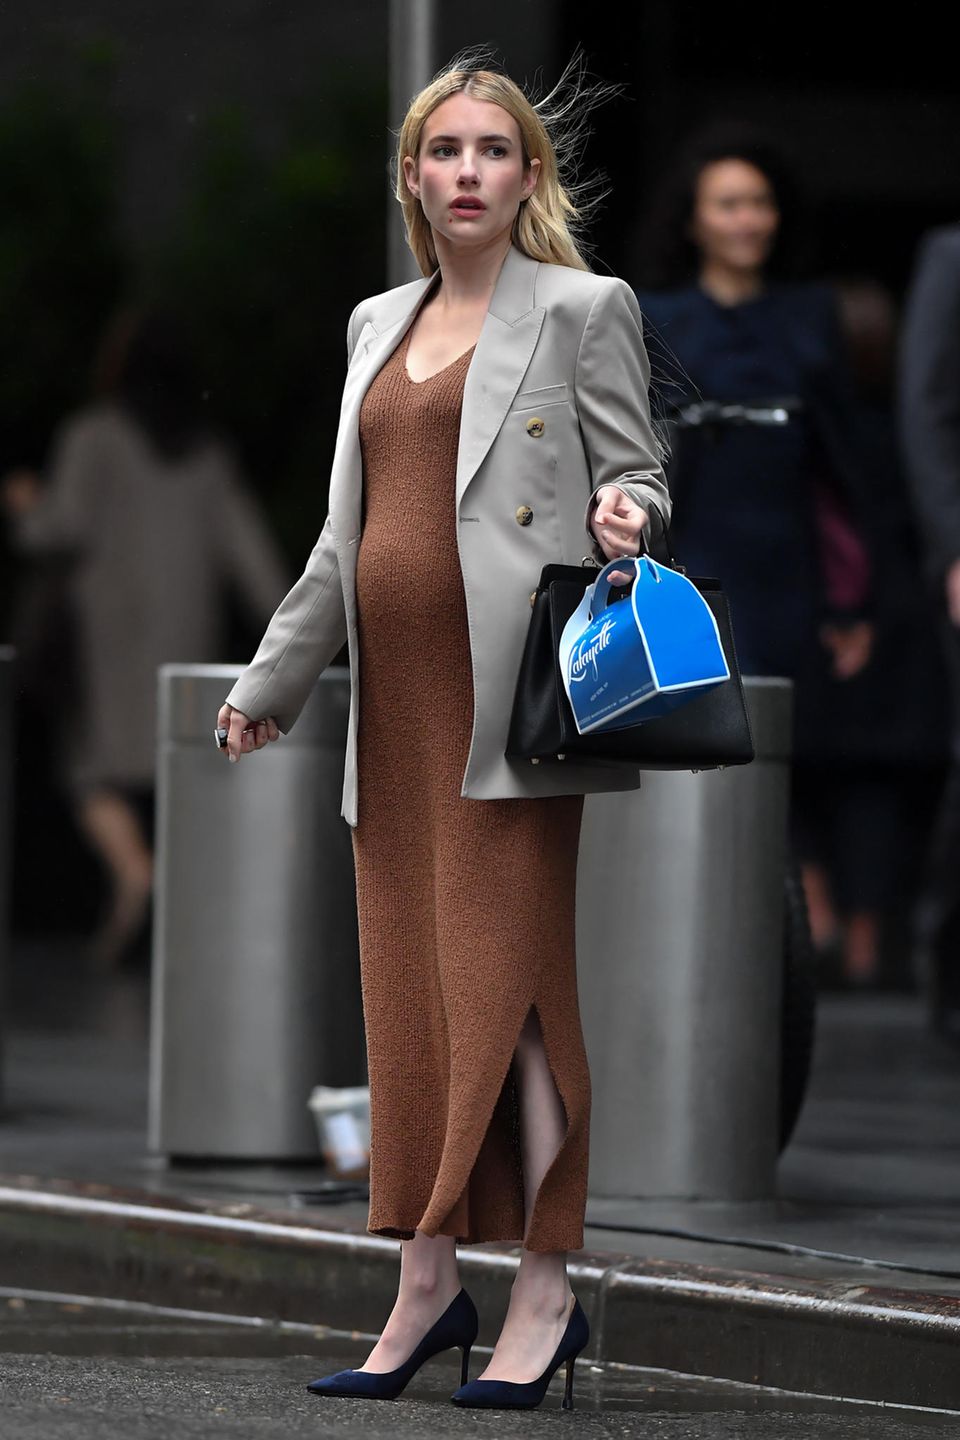 Huch, erwartet Emma Roberts etwa wieder Nachwuchs? Auf den Straßen New Yorks wurde die Schauspielerin mit Babybauch gesichtet. Bei den Schnappschüssen handelt es sich jedoch um Aufnahmen vom Set zu den Dreharbeiten von "American Horror Story", für die sie einen künstlichen Babybauch trägt.